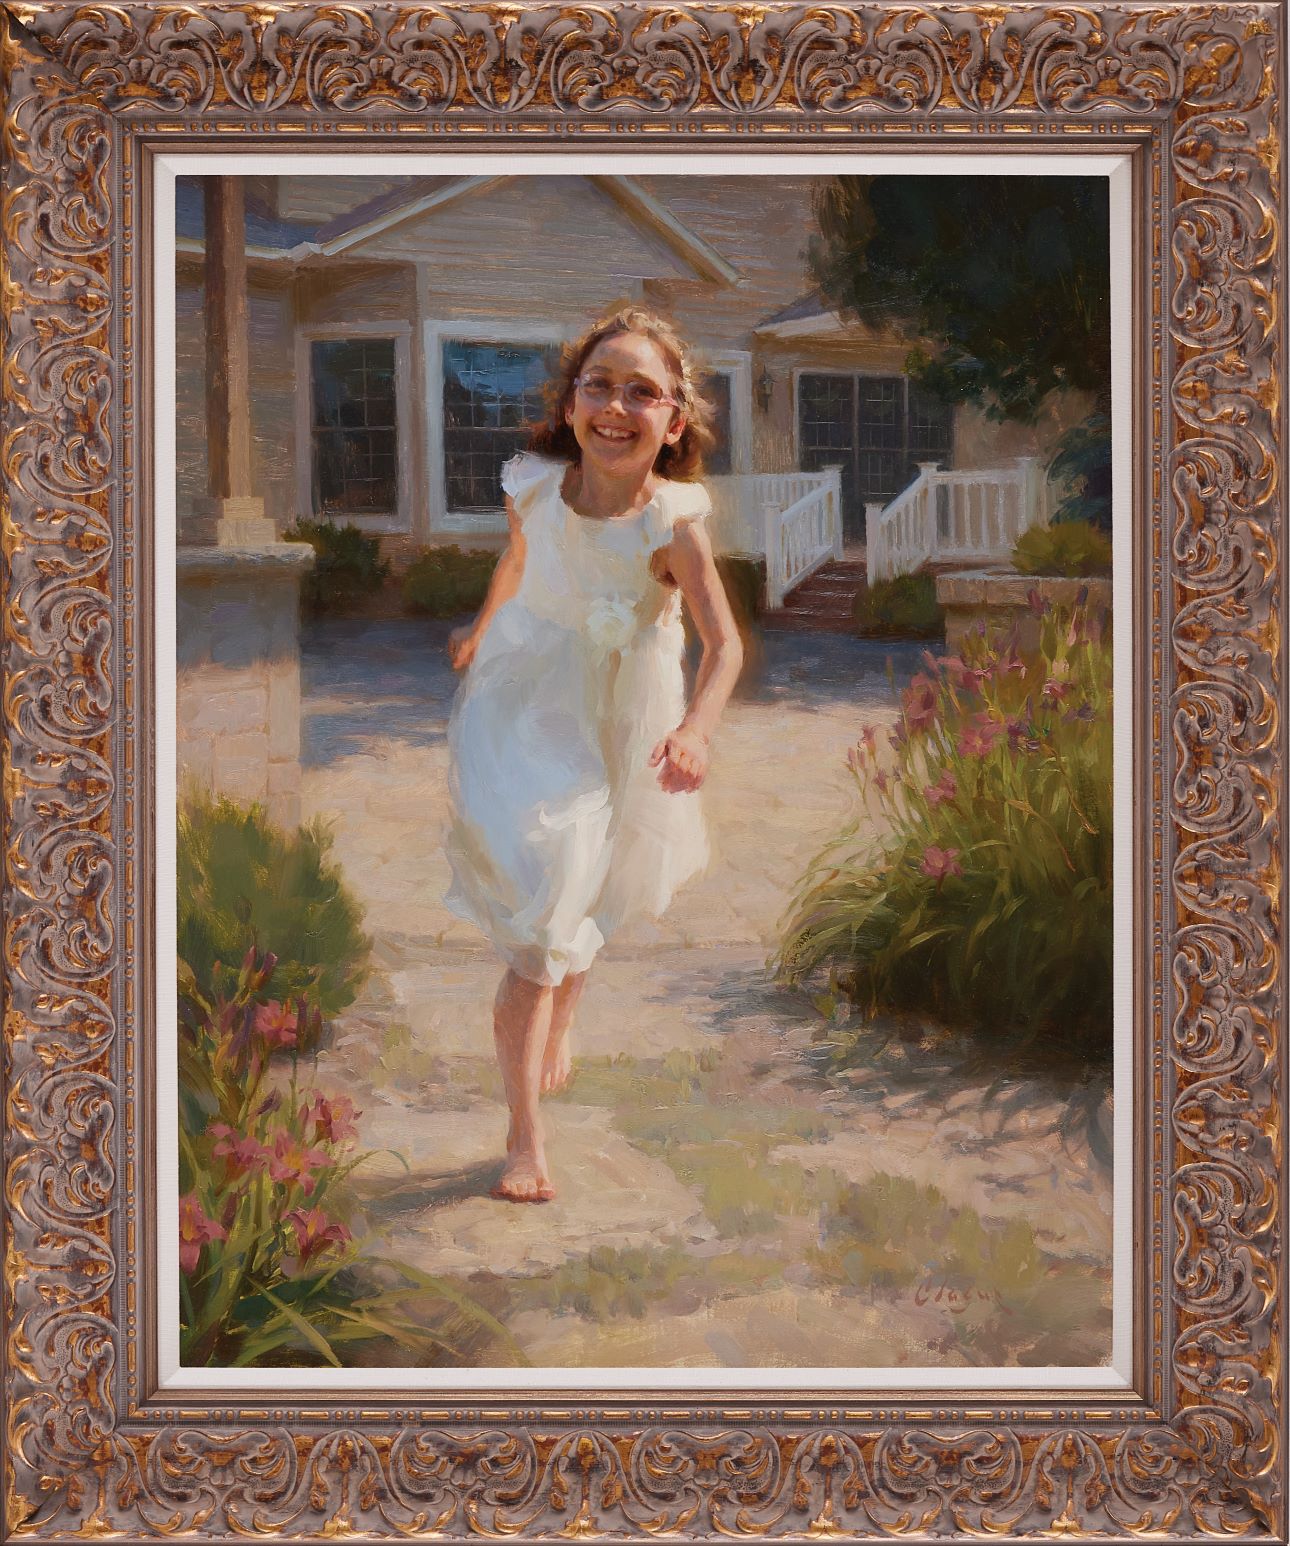 Tác phẩm đạt giải đồng “Jenna’s Joy” (Niềm vui của bé Jenna) của họa sĩ Adam Clague đến từ Hoa Kỳ. Tranh sơn dầu trên vải Canvas; 30 inch x 24 inch. (~ 76cm x 61cm) (Ảnh: Cuộc thi Vẽ tranh Nhân vật Quốc tế NTD)